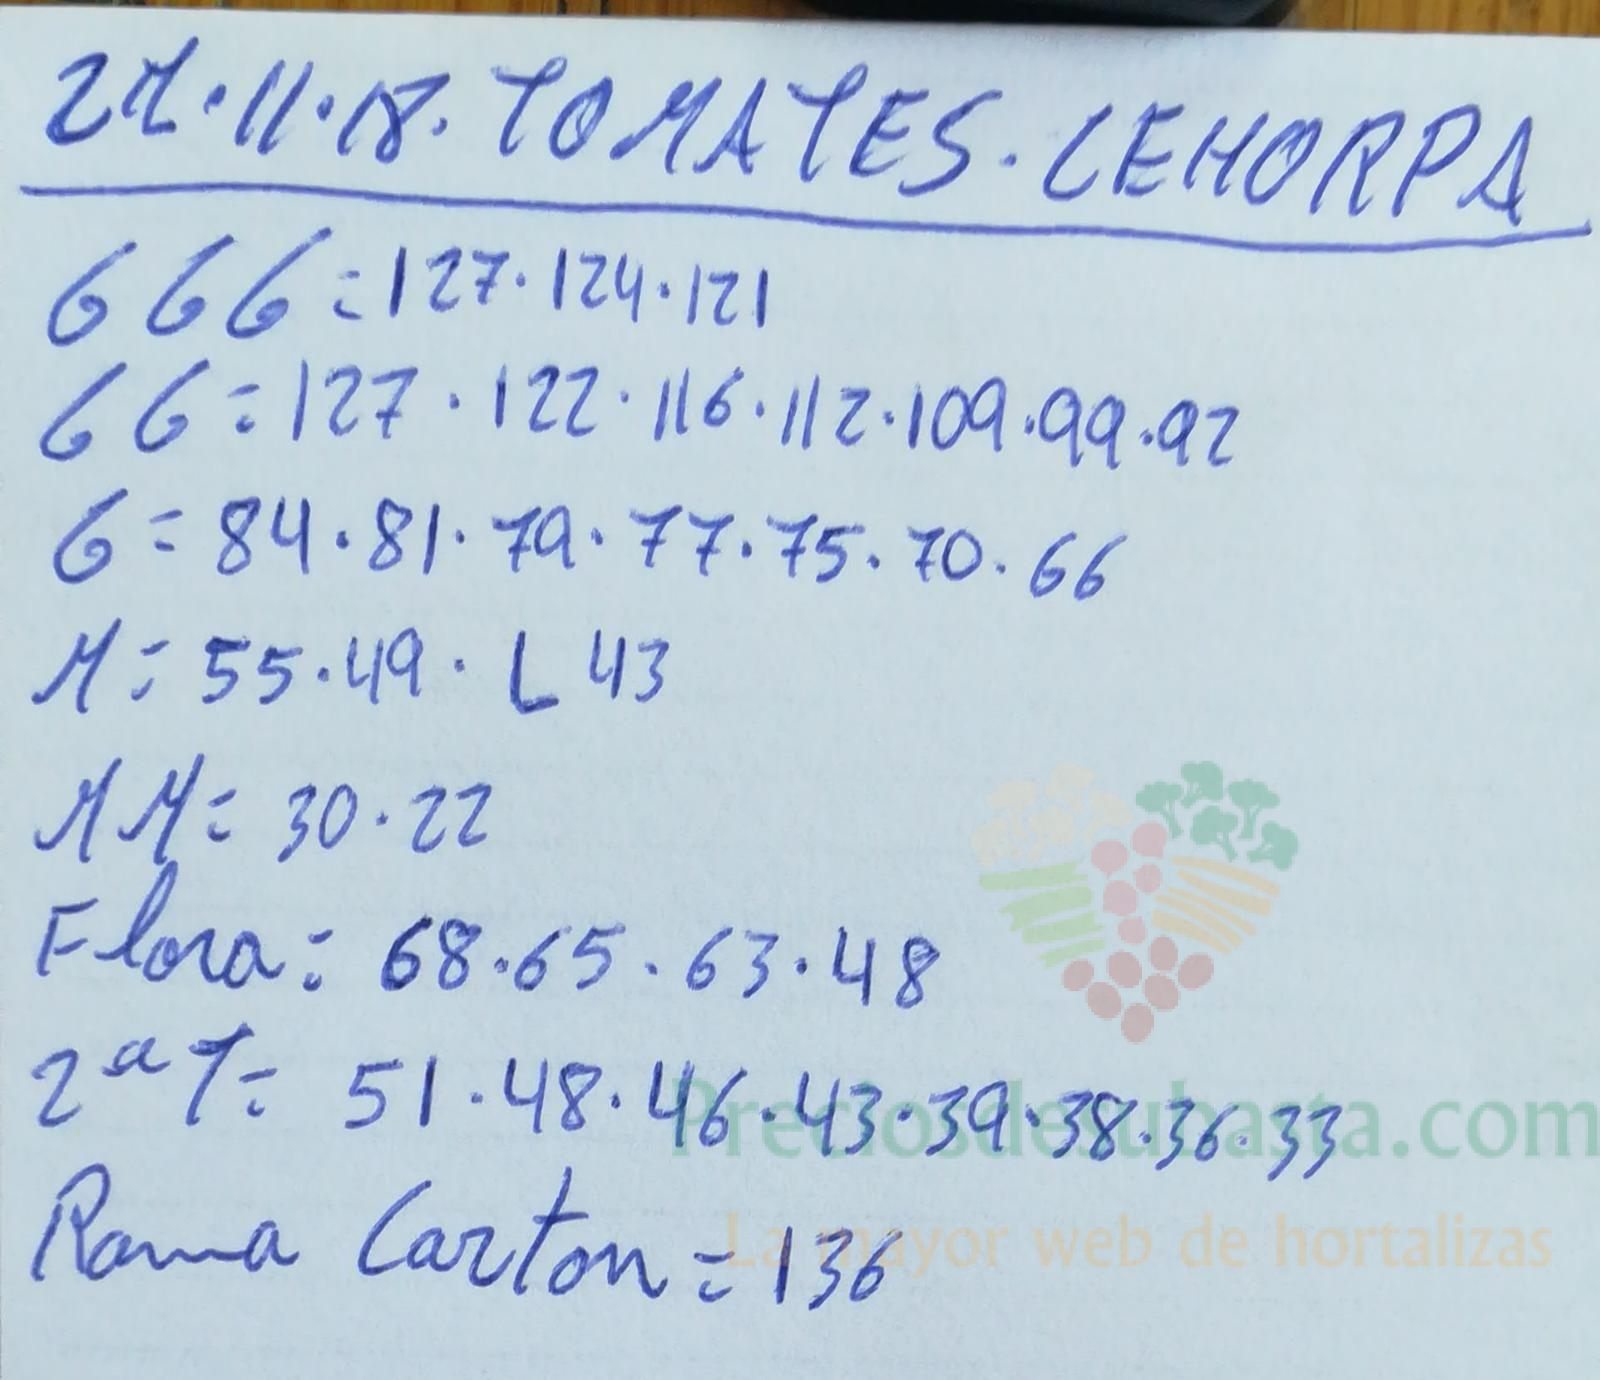 Subasta hortofrutícola Costa de Almería Cehorpa Tomates 27 de Noviembre